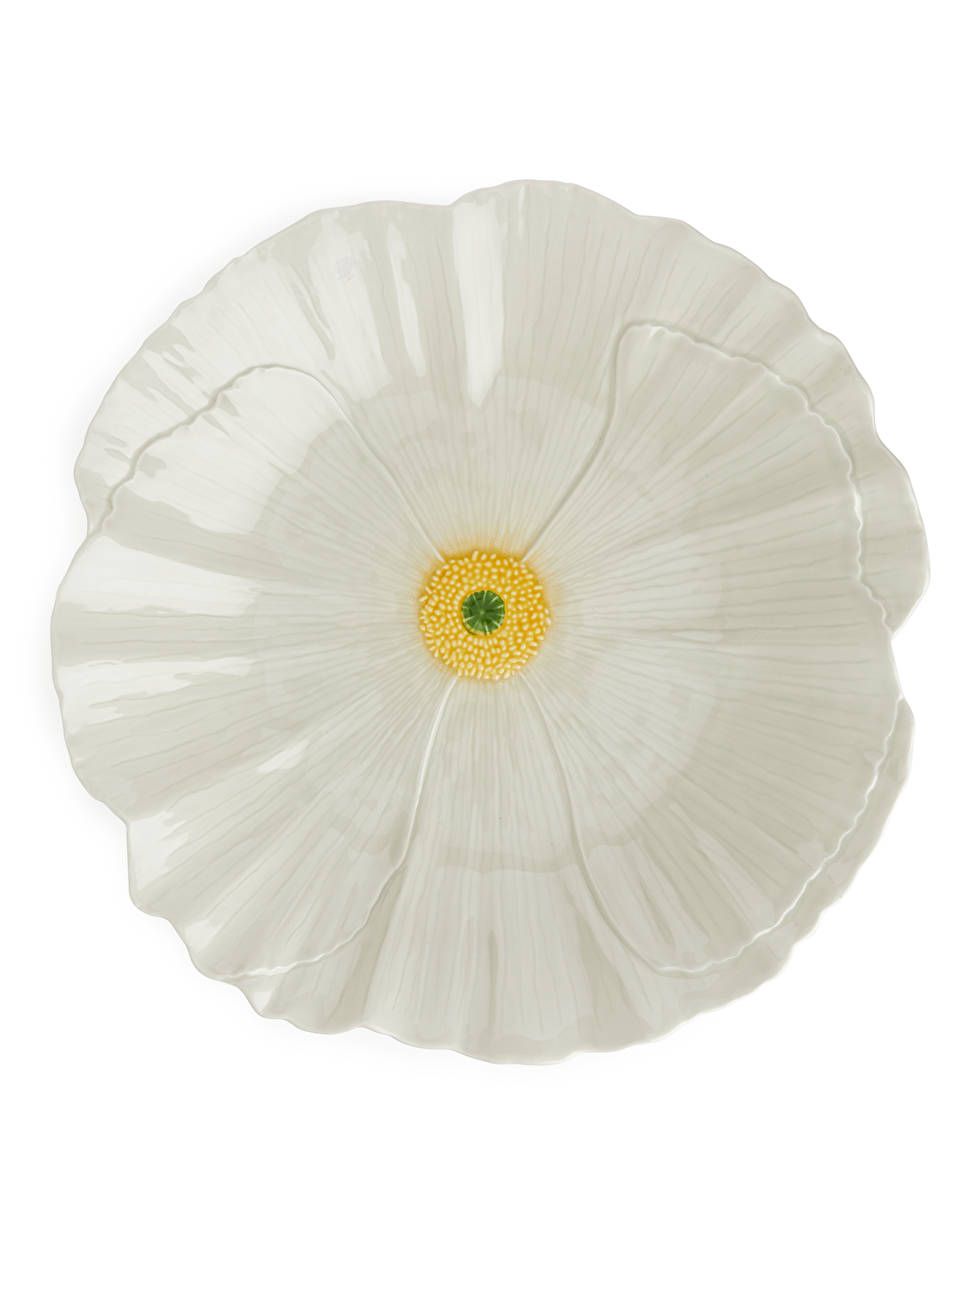 San Raphael Wild Flower Centrepiece Plate, 40 cm - Off White - ARKET GB | ARKET